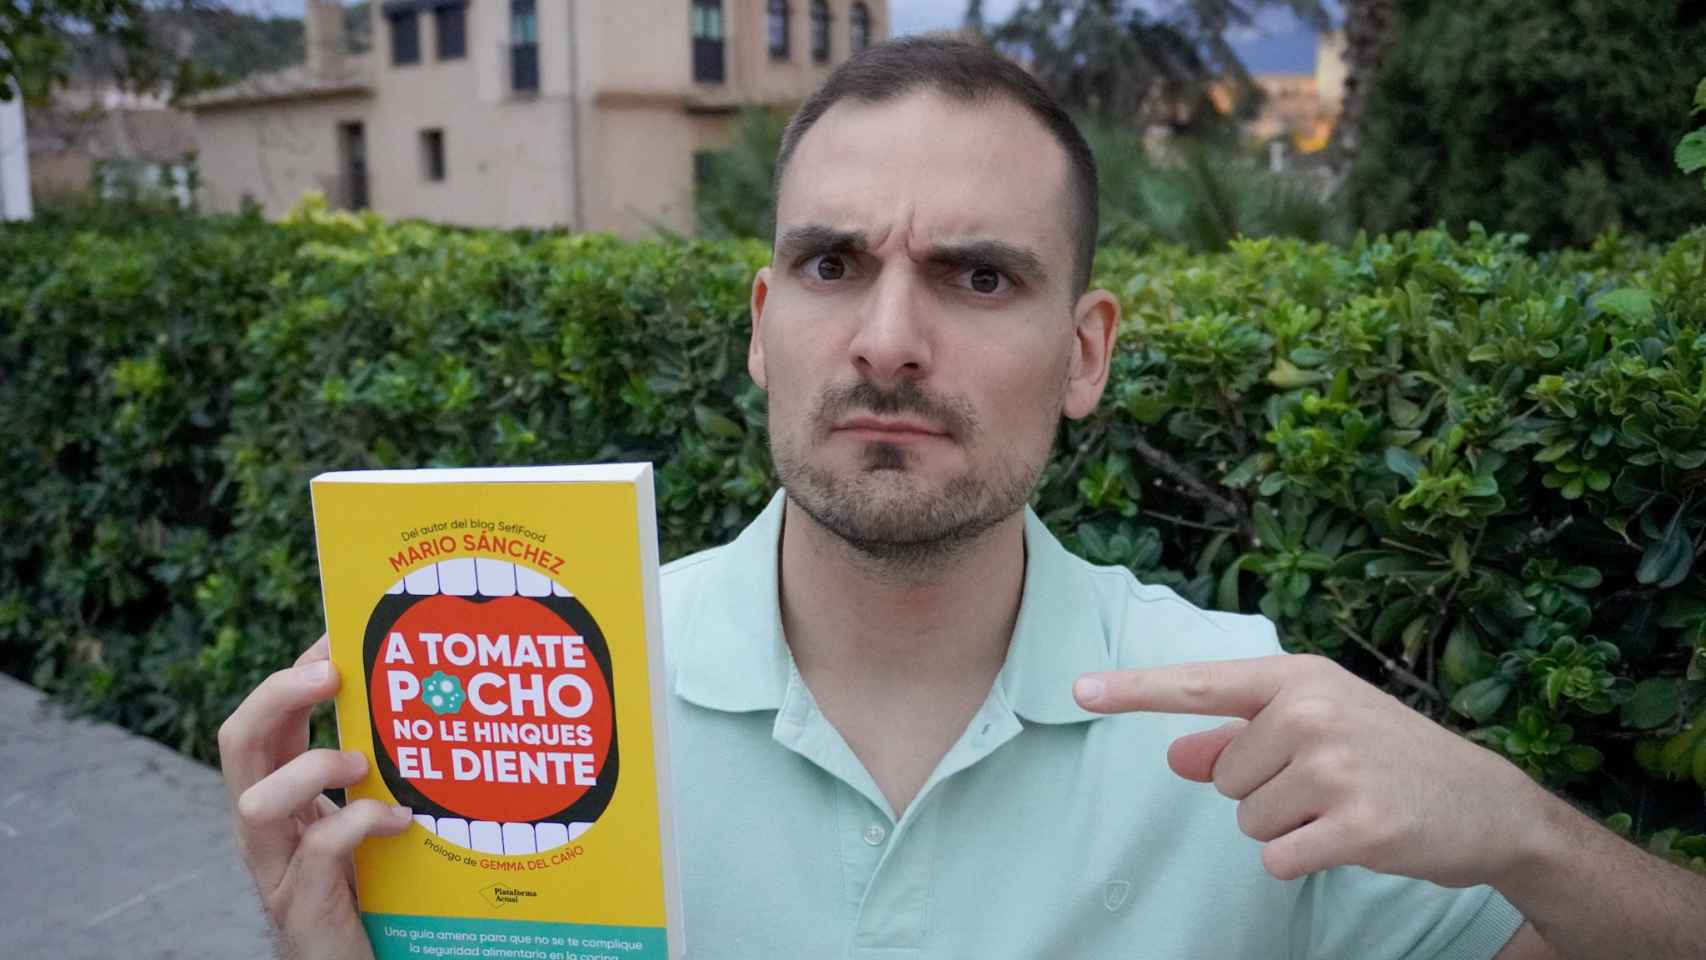 Mario Sánchez señala su libro mientras lanza una mirada inquisidora a aquellos que no lo compren en el FNAC.